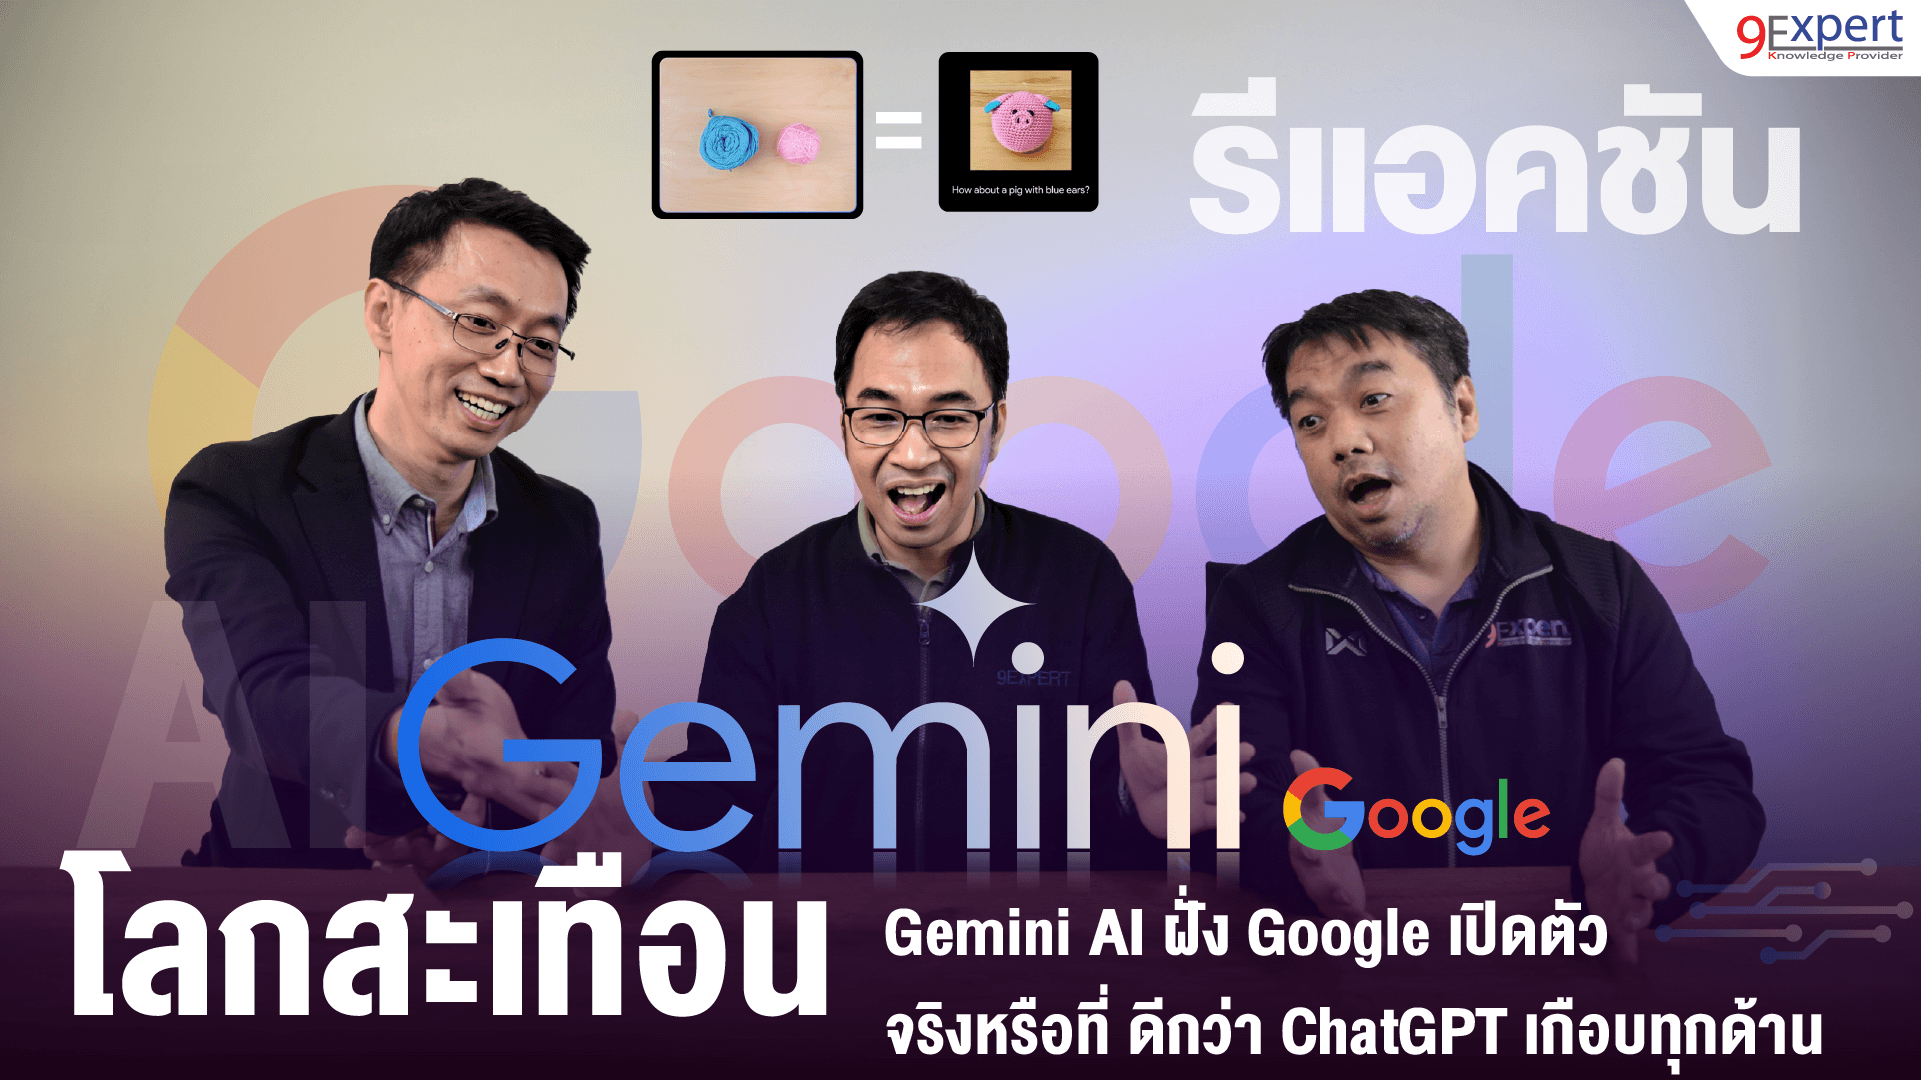 Germini AI ฝั่ง Google เปิดตัว จริงหรือที่ ดีกว่า ChatGPT เกือบทุกด้าน